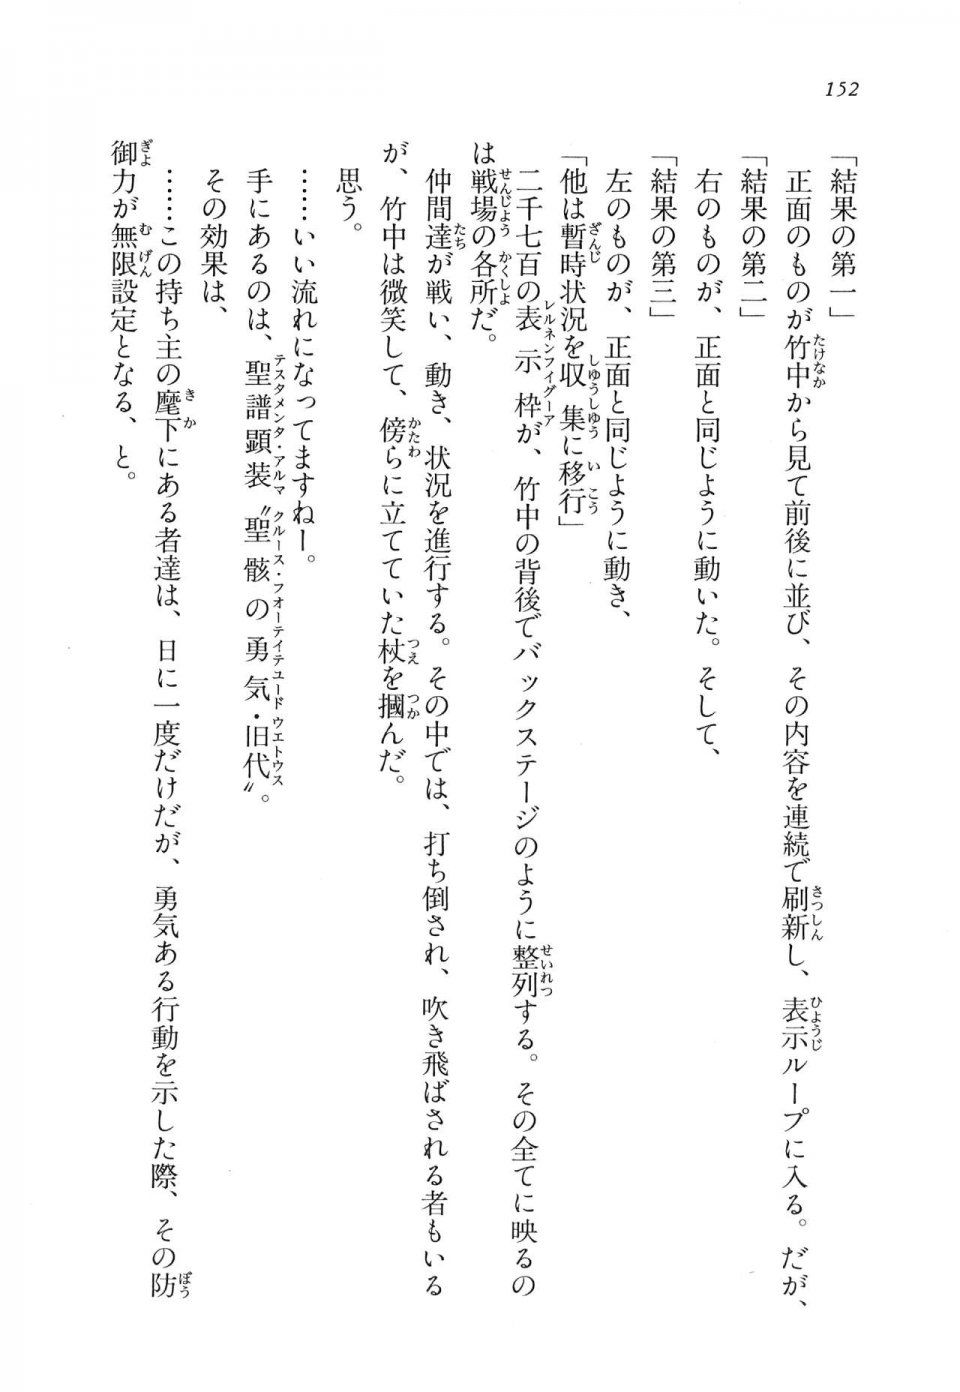 Kyoukai Senjou no Horizon LN Vol 11(5A) - Photo #152